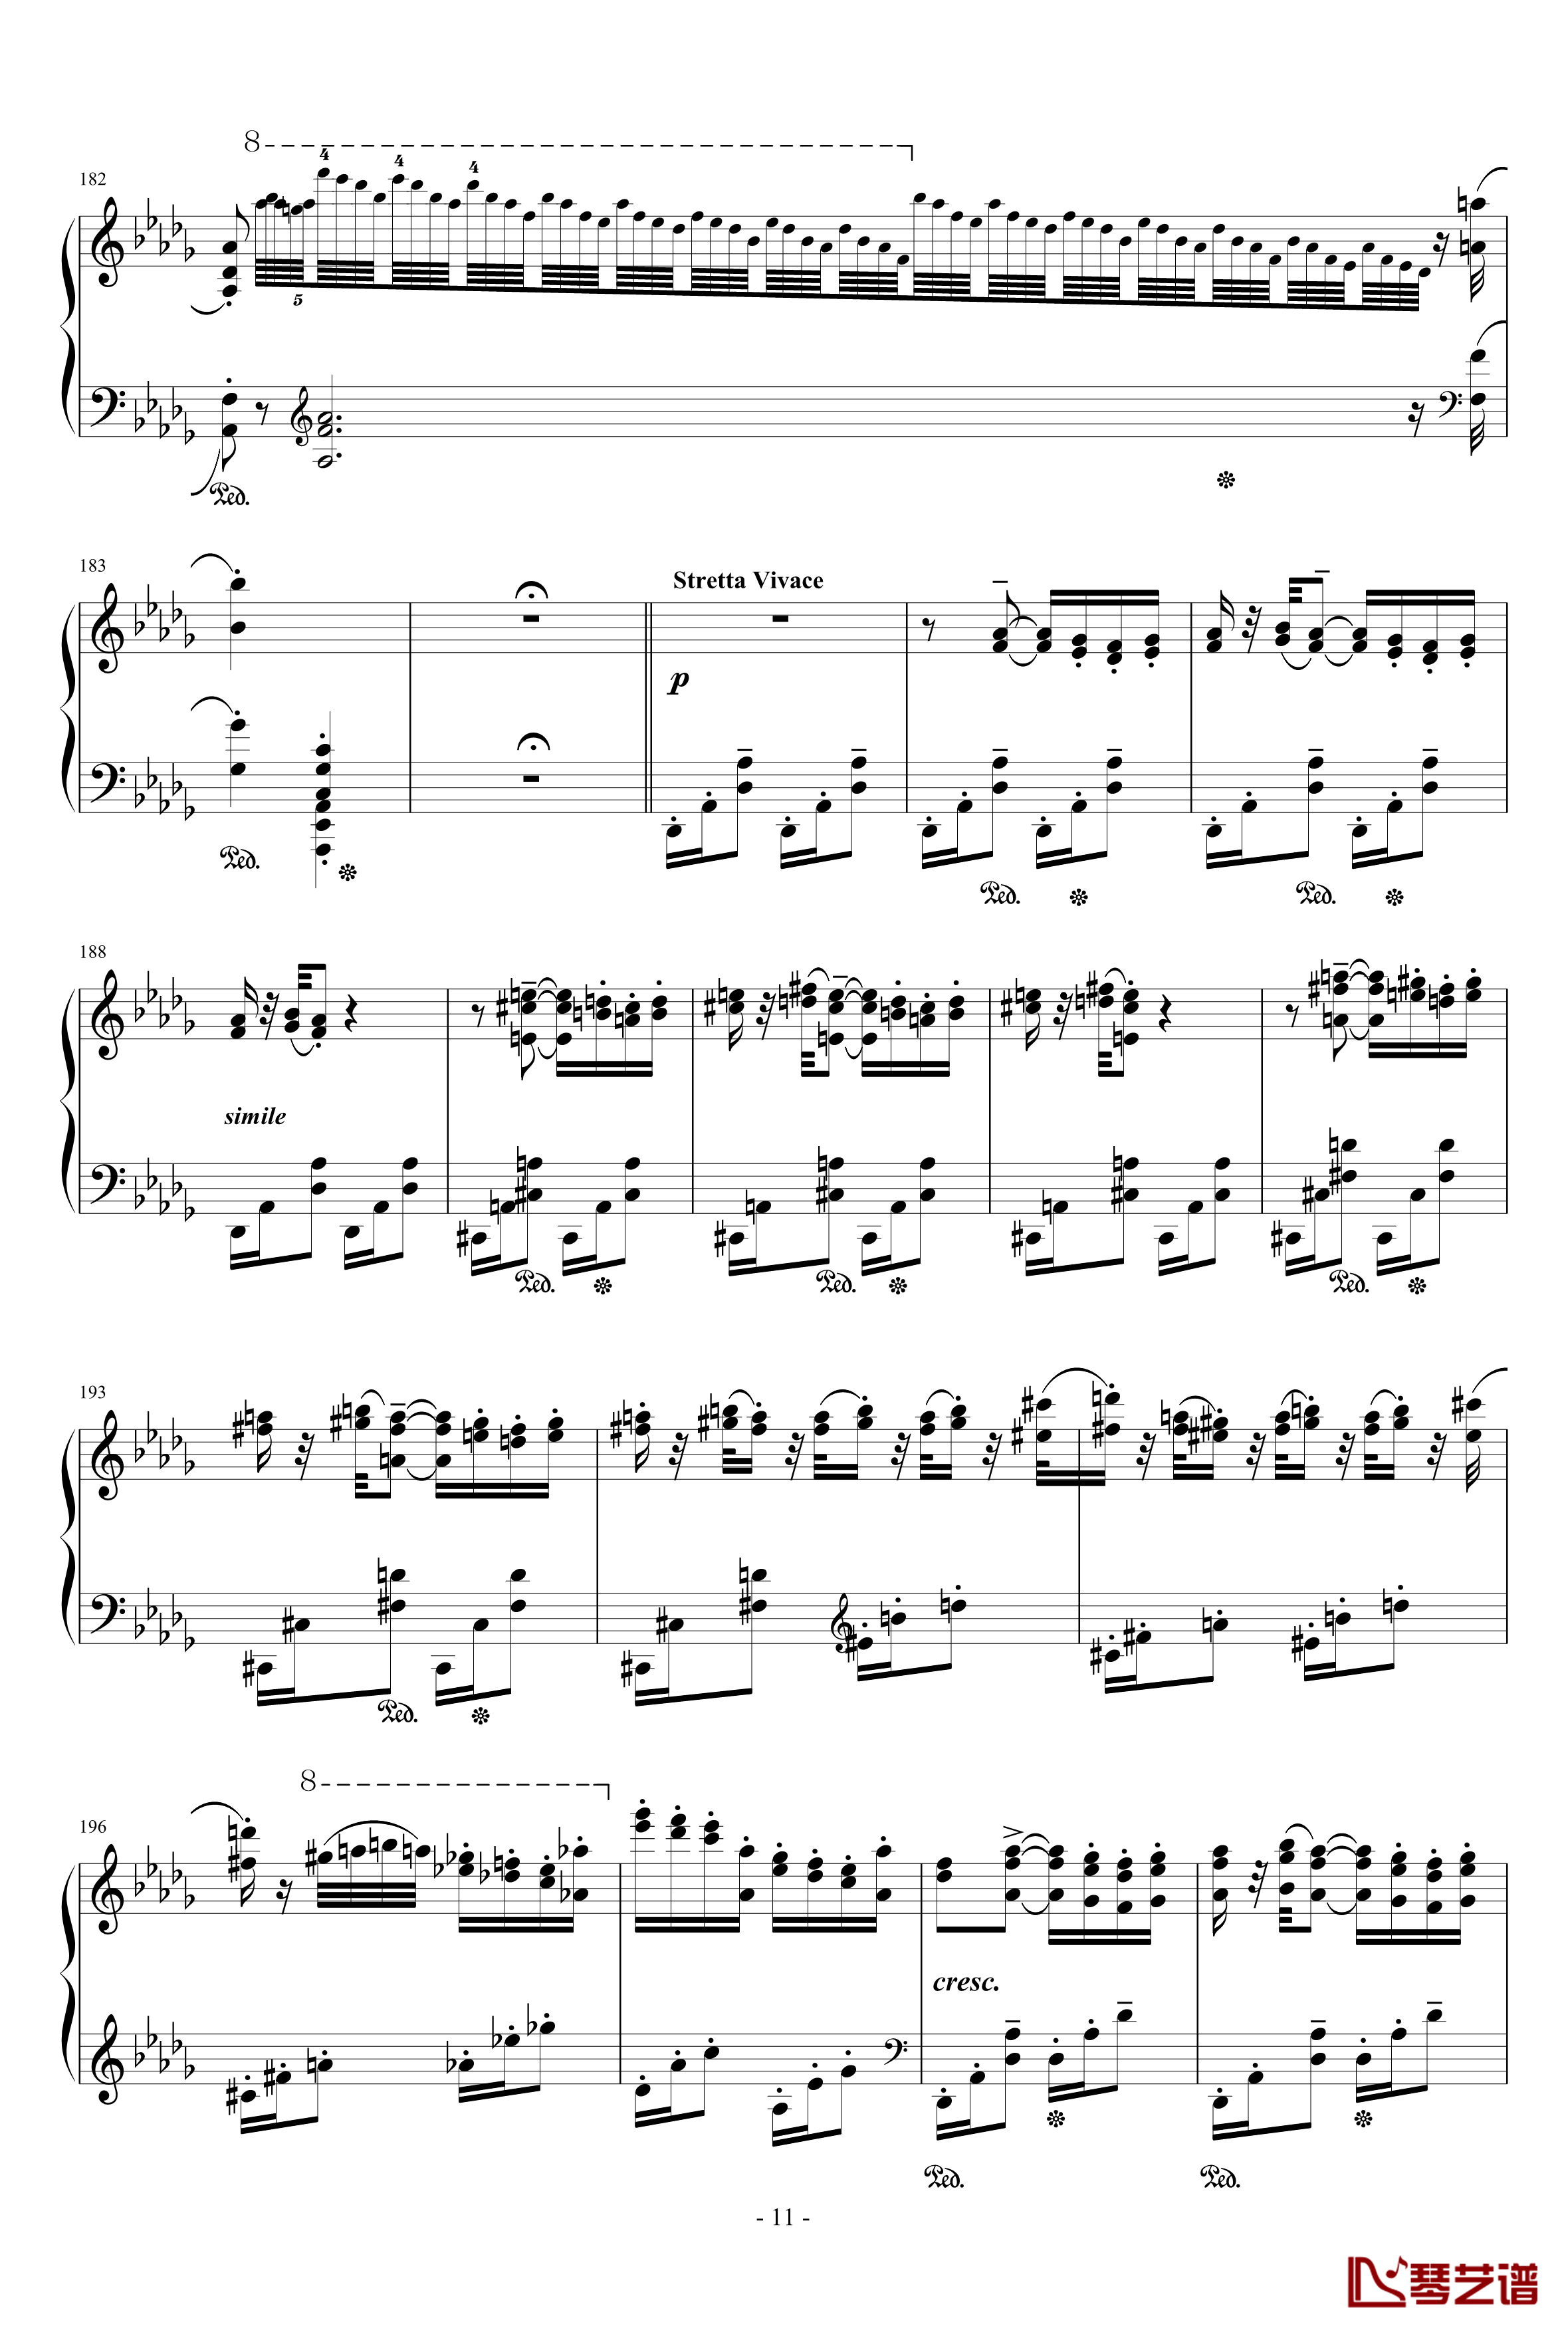 匈牙利狂想曲12号钢琴谱-著名的匈狂-李斯特11